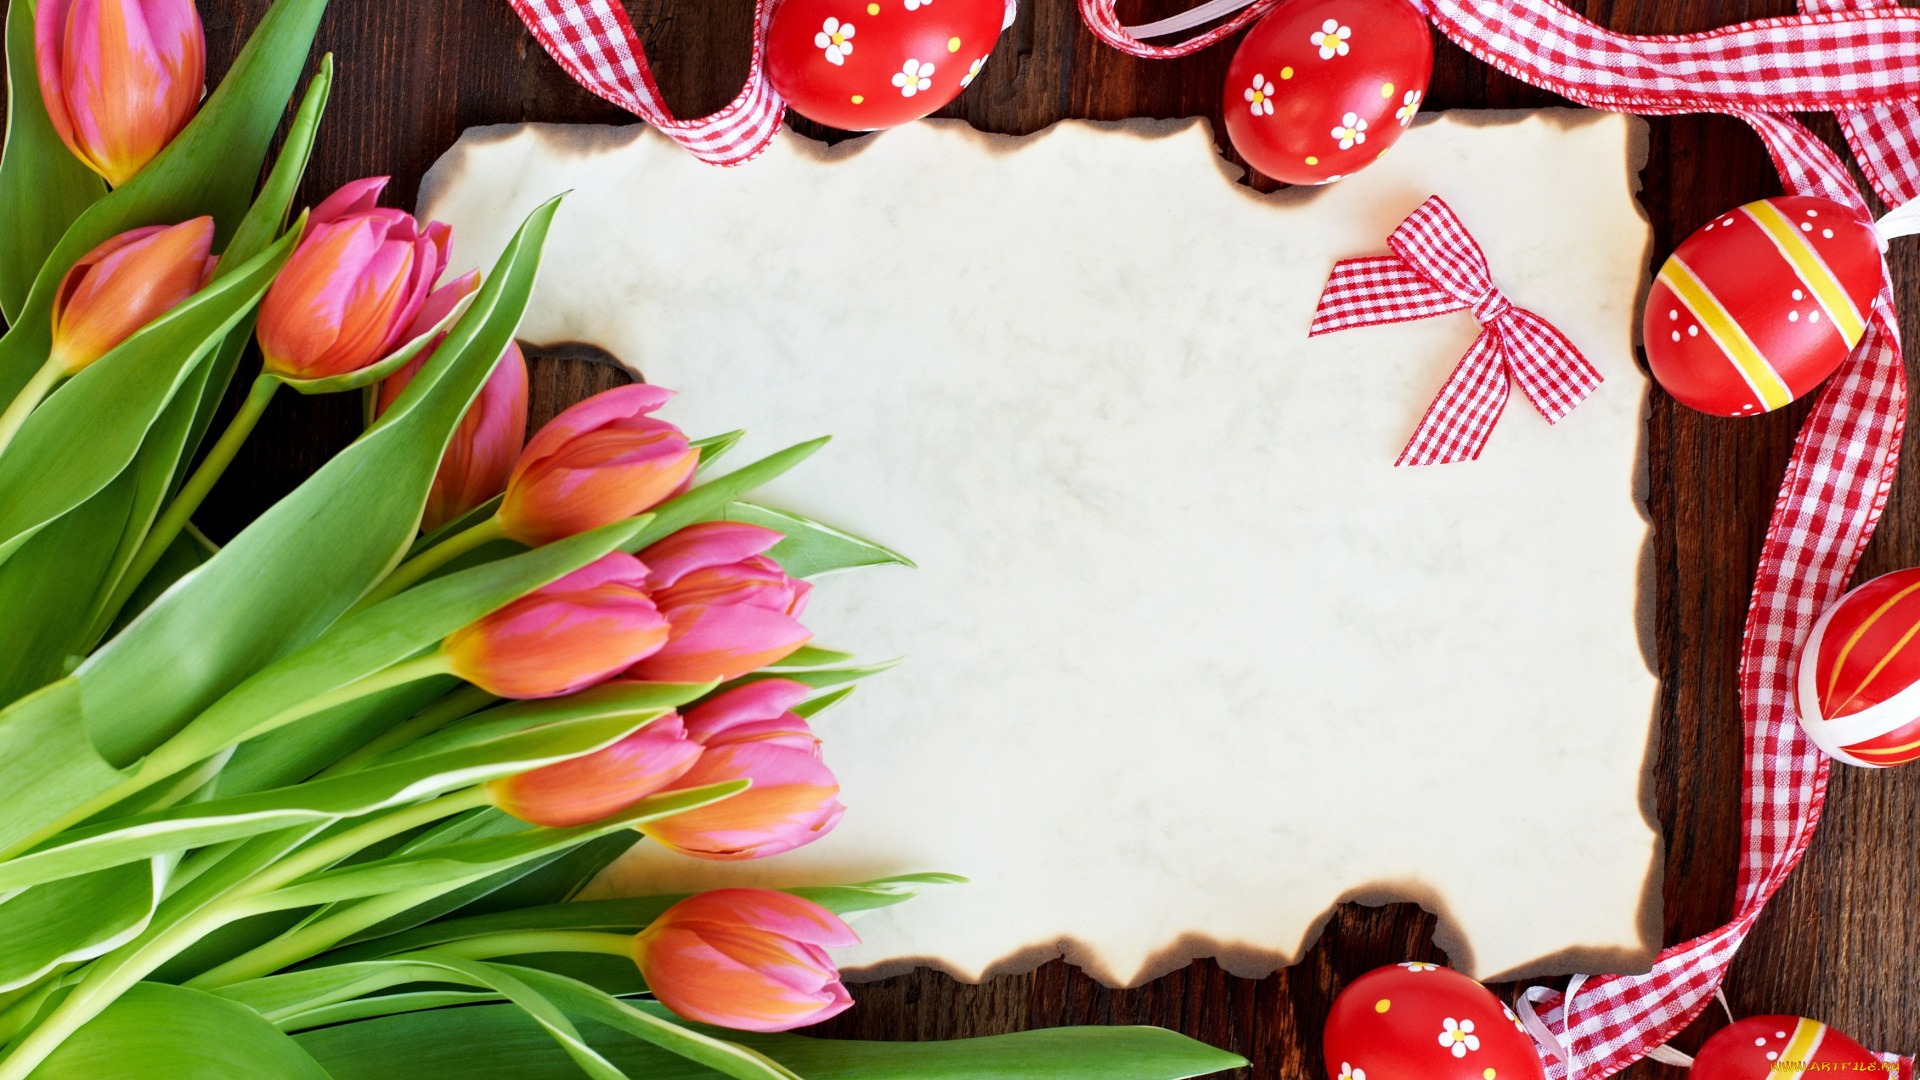 праздничные, пасха, тюльпаны, card, tulips, red, flowers, eggs, easter